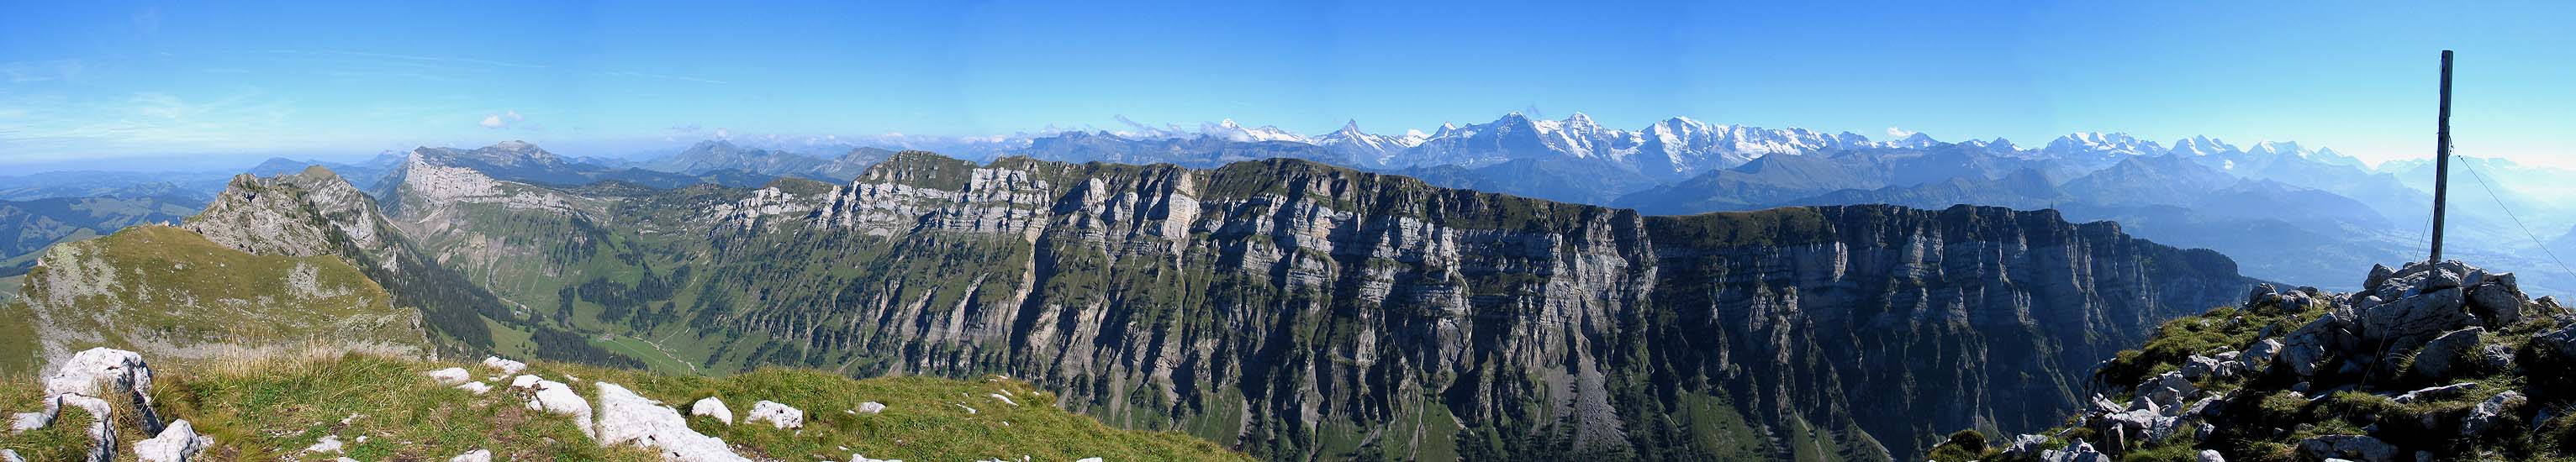 Sigriswiler Rothorn: Sichel, Justistal, Jungfrau and Niederhorn / Foto: F.Bieri